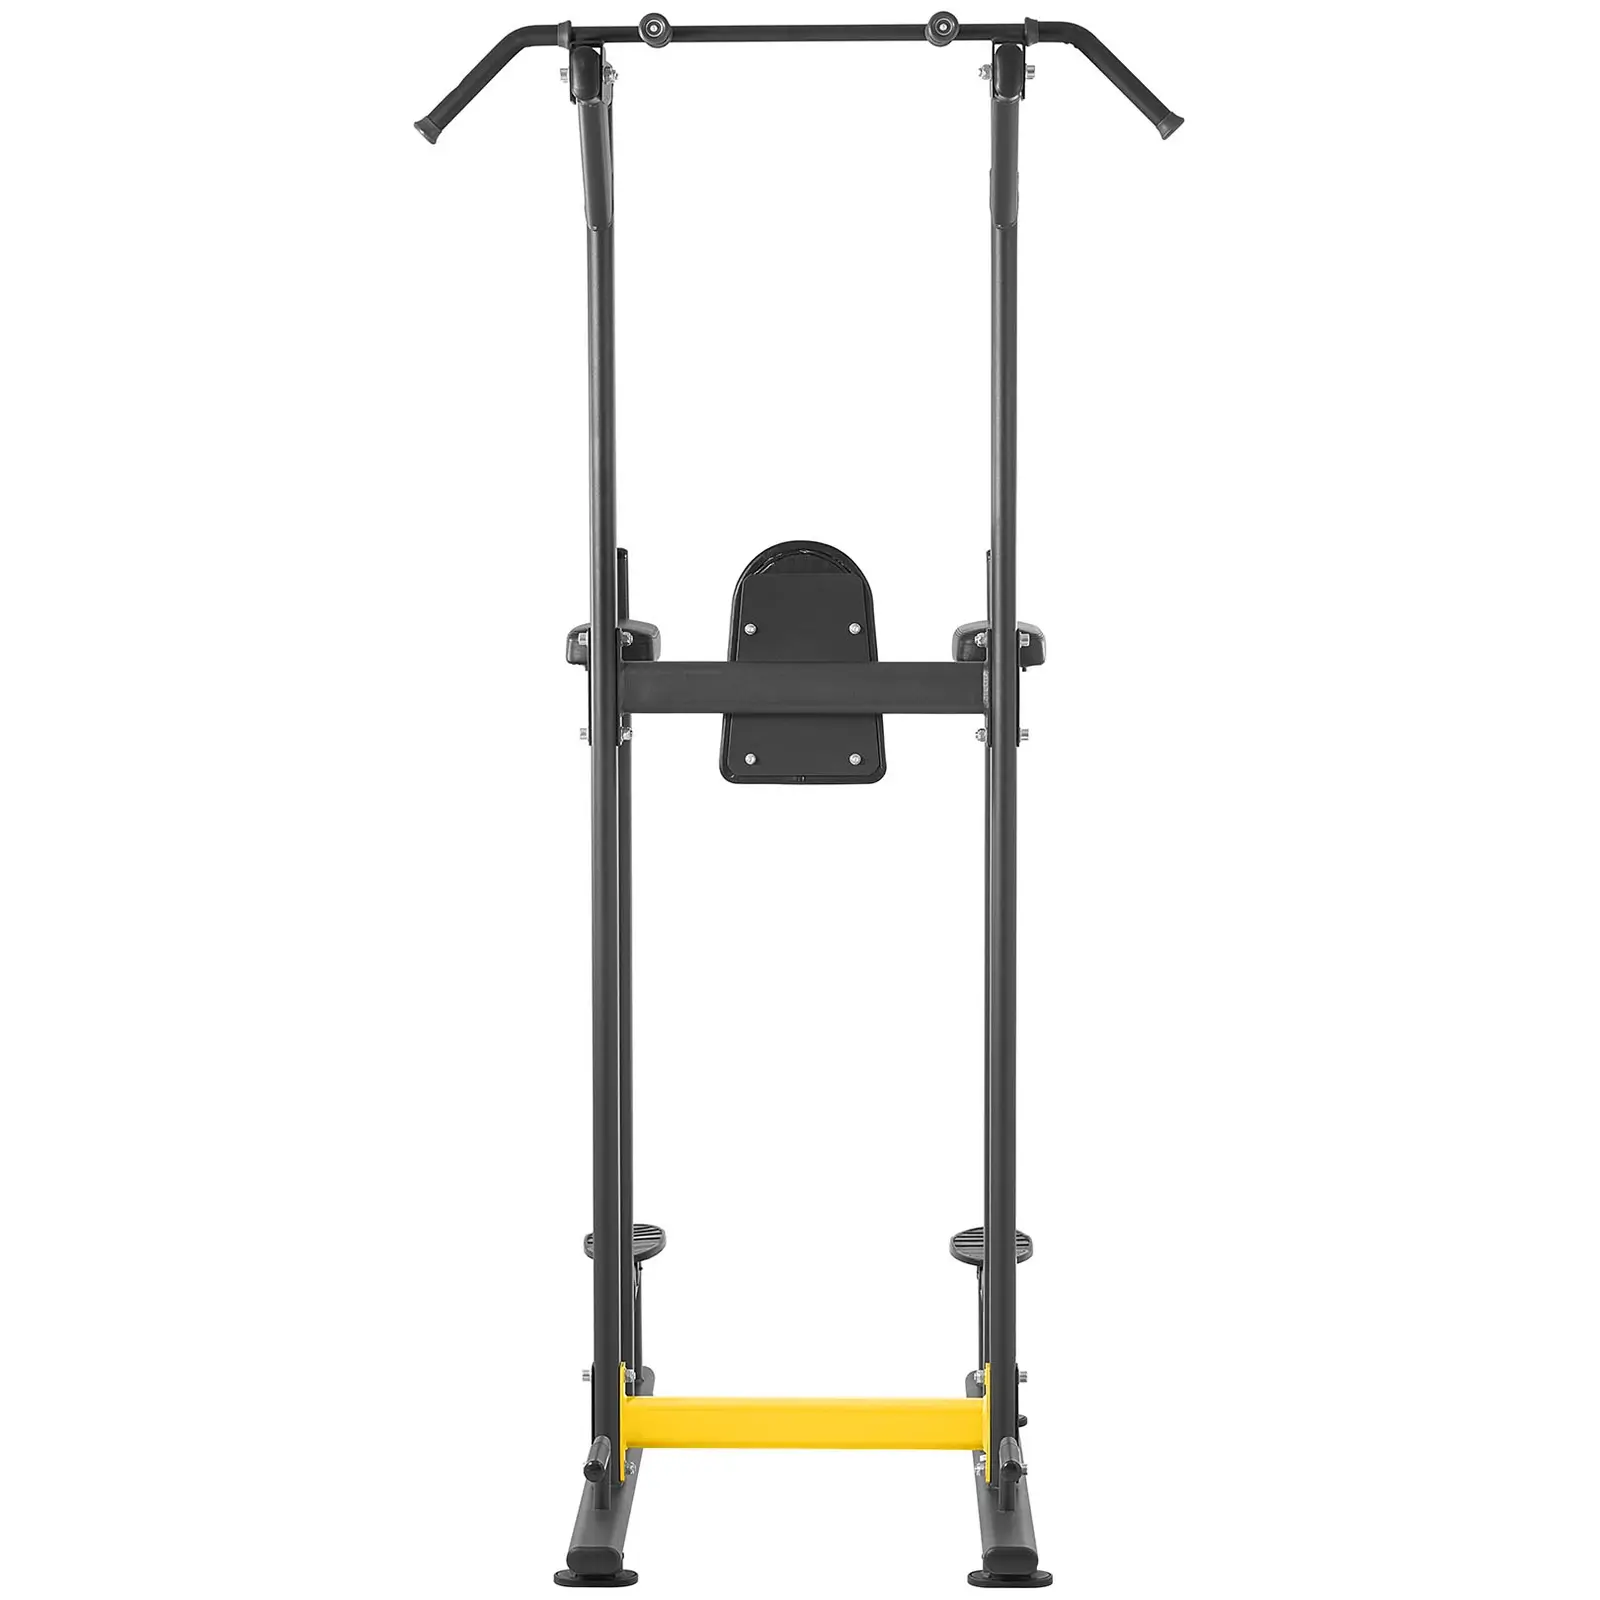 Træningsstativ til knæøvelser - 135 kg